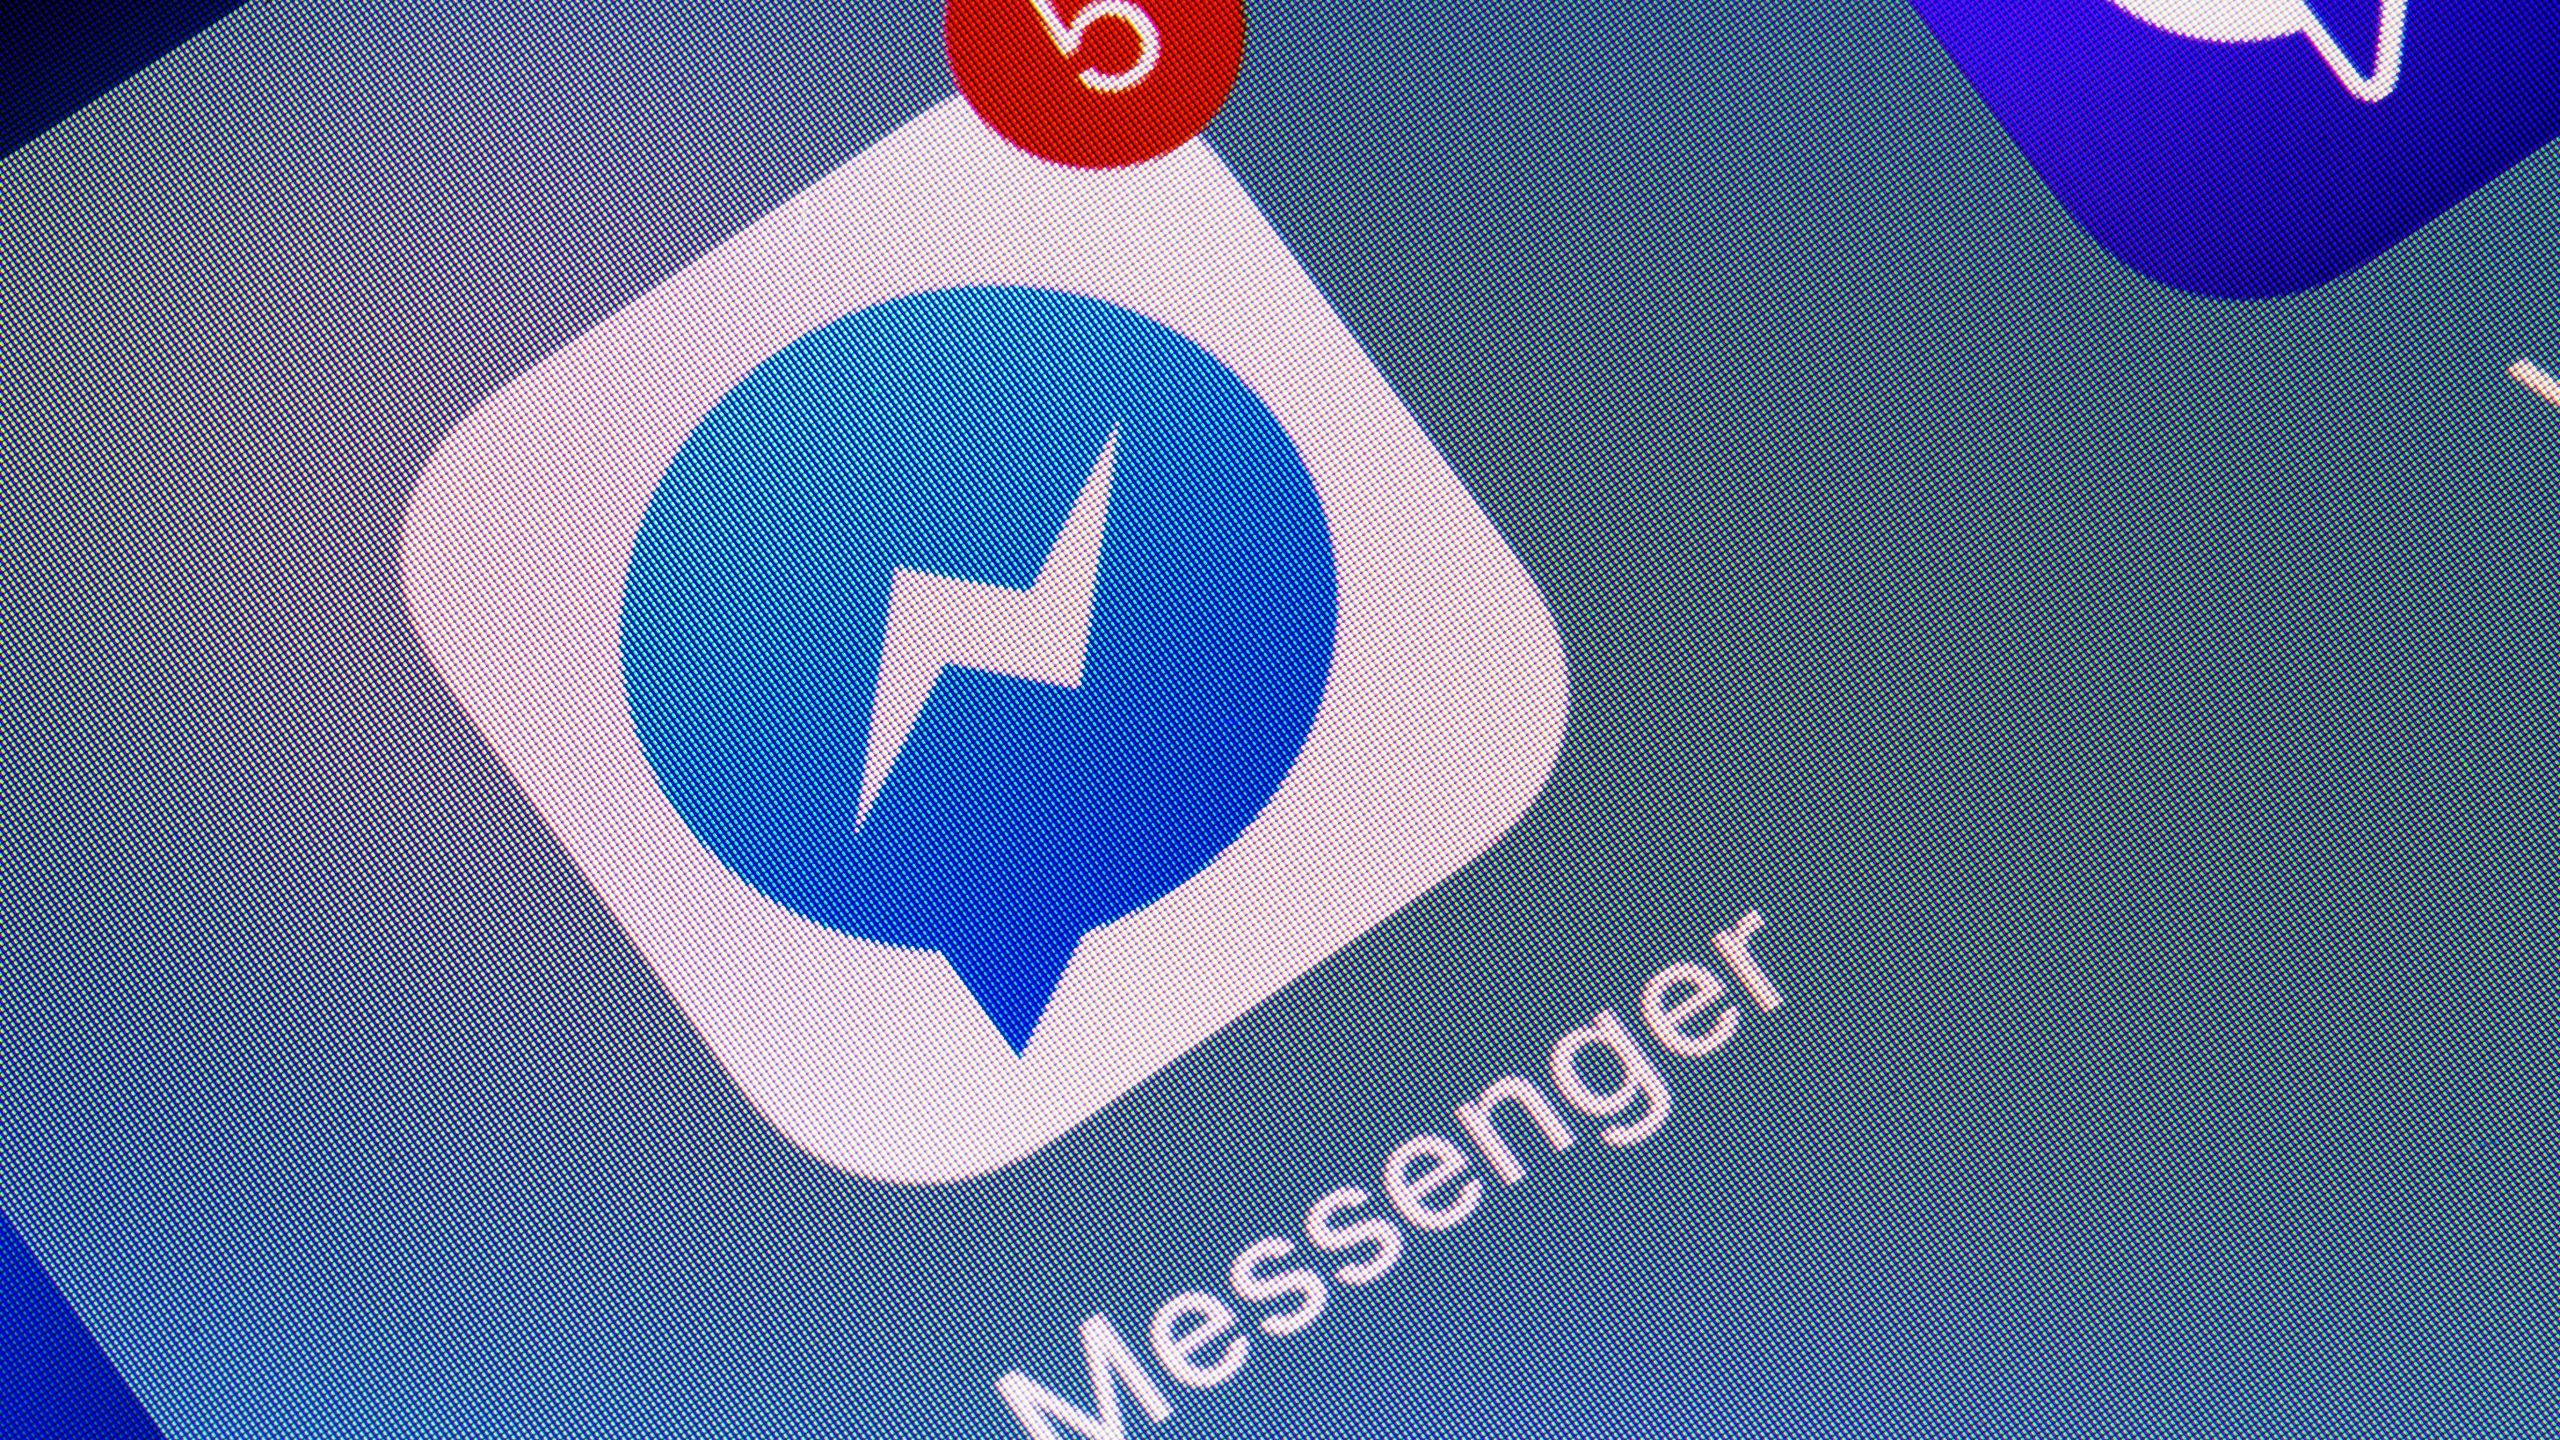 Facebook Messenger app in iPhone